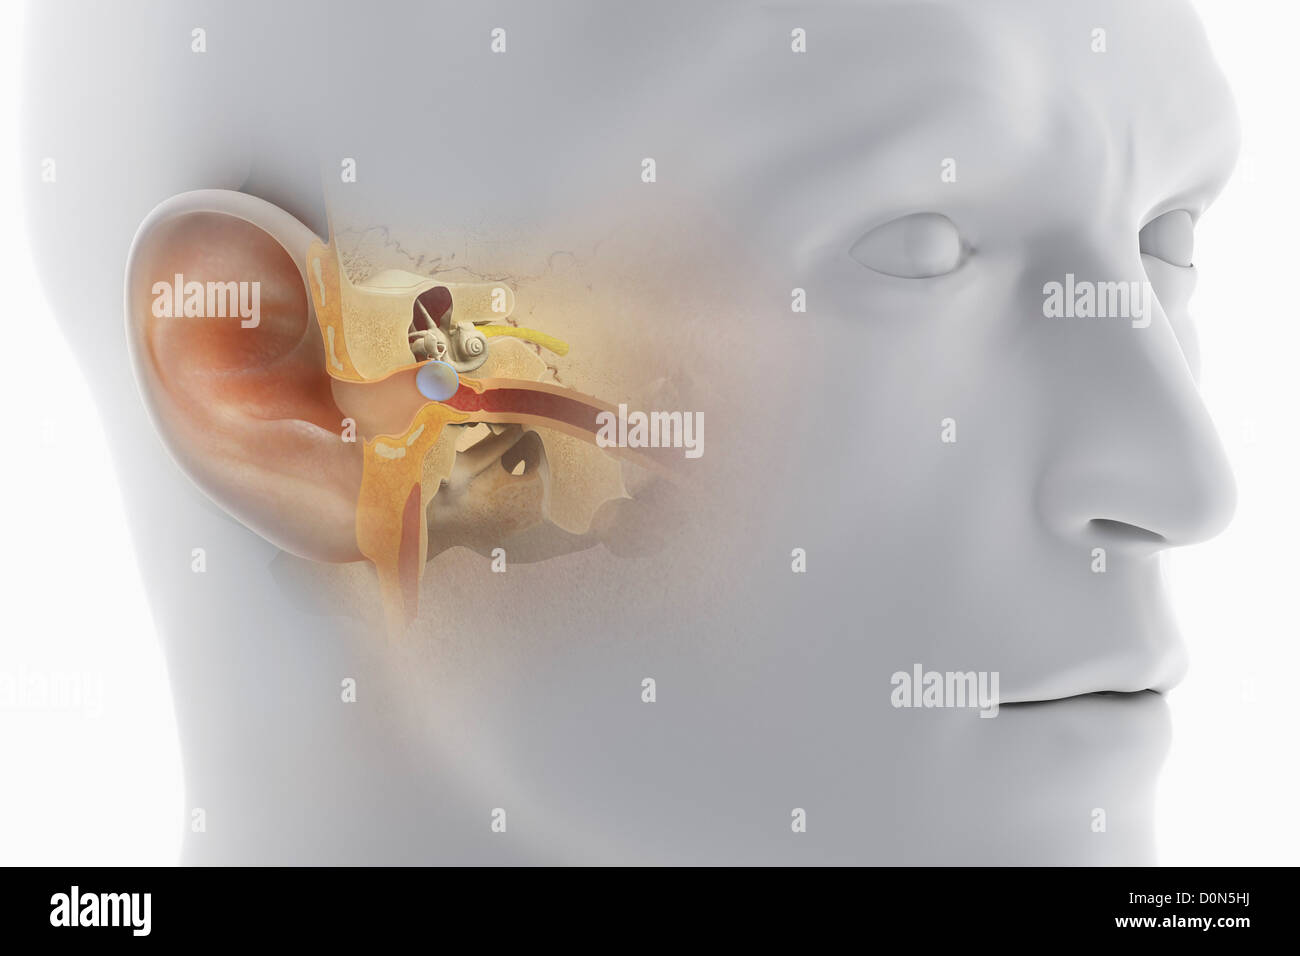 Una vista seccional de la cabeza humana, revelando la anatomía del canal auditivo y la anatomía del oído interno. Foto de stock